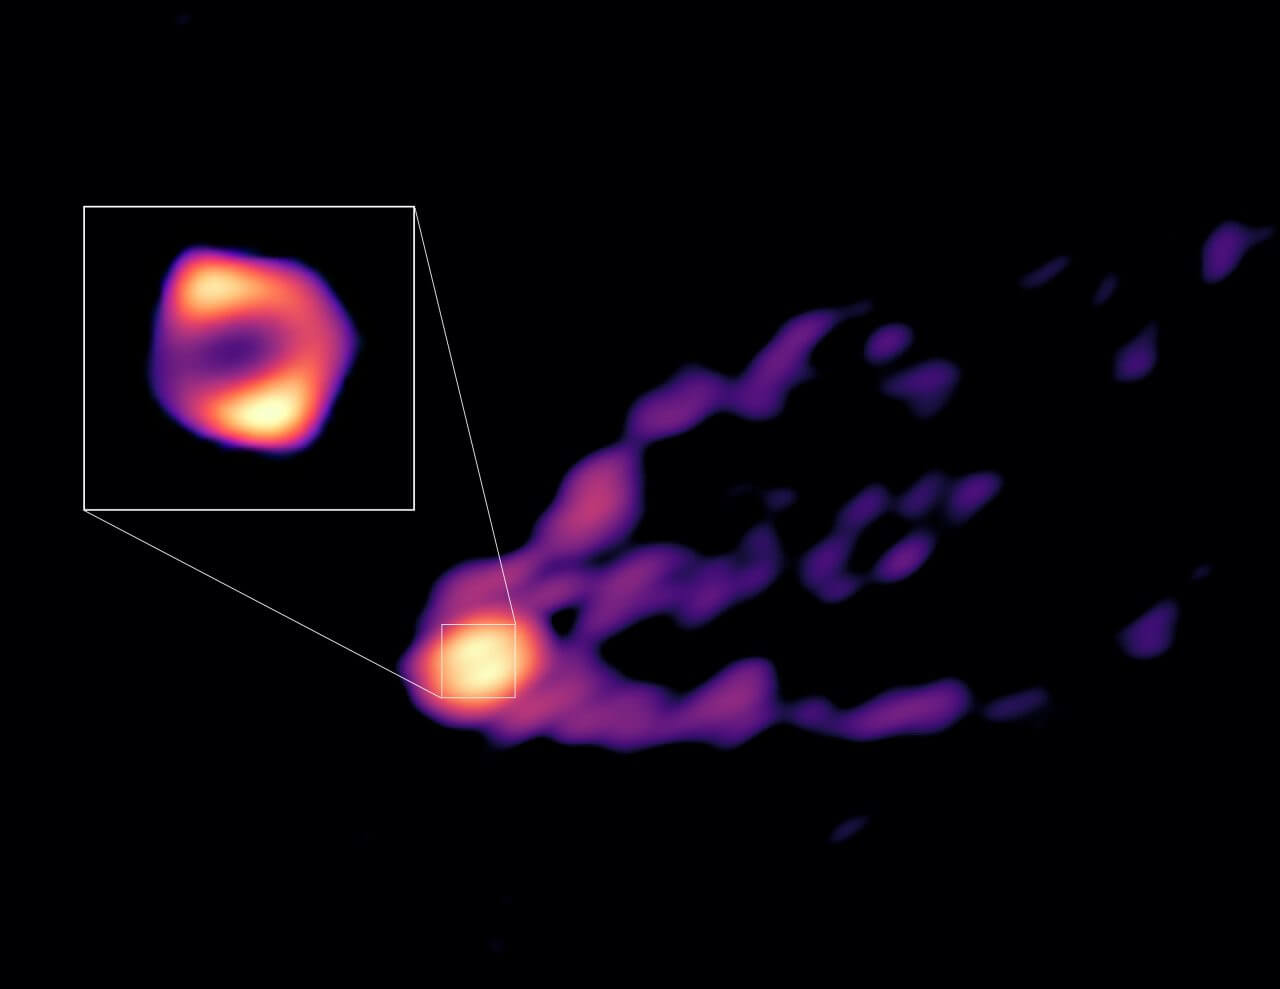 【▲ グローバルミリ波VLBI観測網（GMVA）にアルマ望遠鏡（ALMA）とグリーンランド望遠鏡（GLT）を加えた体制で観測された楕円銀河「M87」の中心部。ジェットの根元（背景）と超大質量ブラックホール周辺のリング構造（拡大図）を初めて同時に捉えることに成功したという（Credit: R.-S. Lu (SHAO), E. Ros (MPIfR), S. Dagnello (NRAO/AUI/NSF)）】